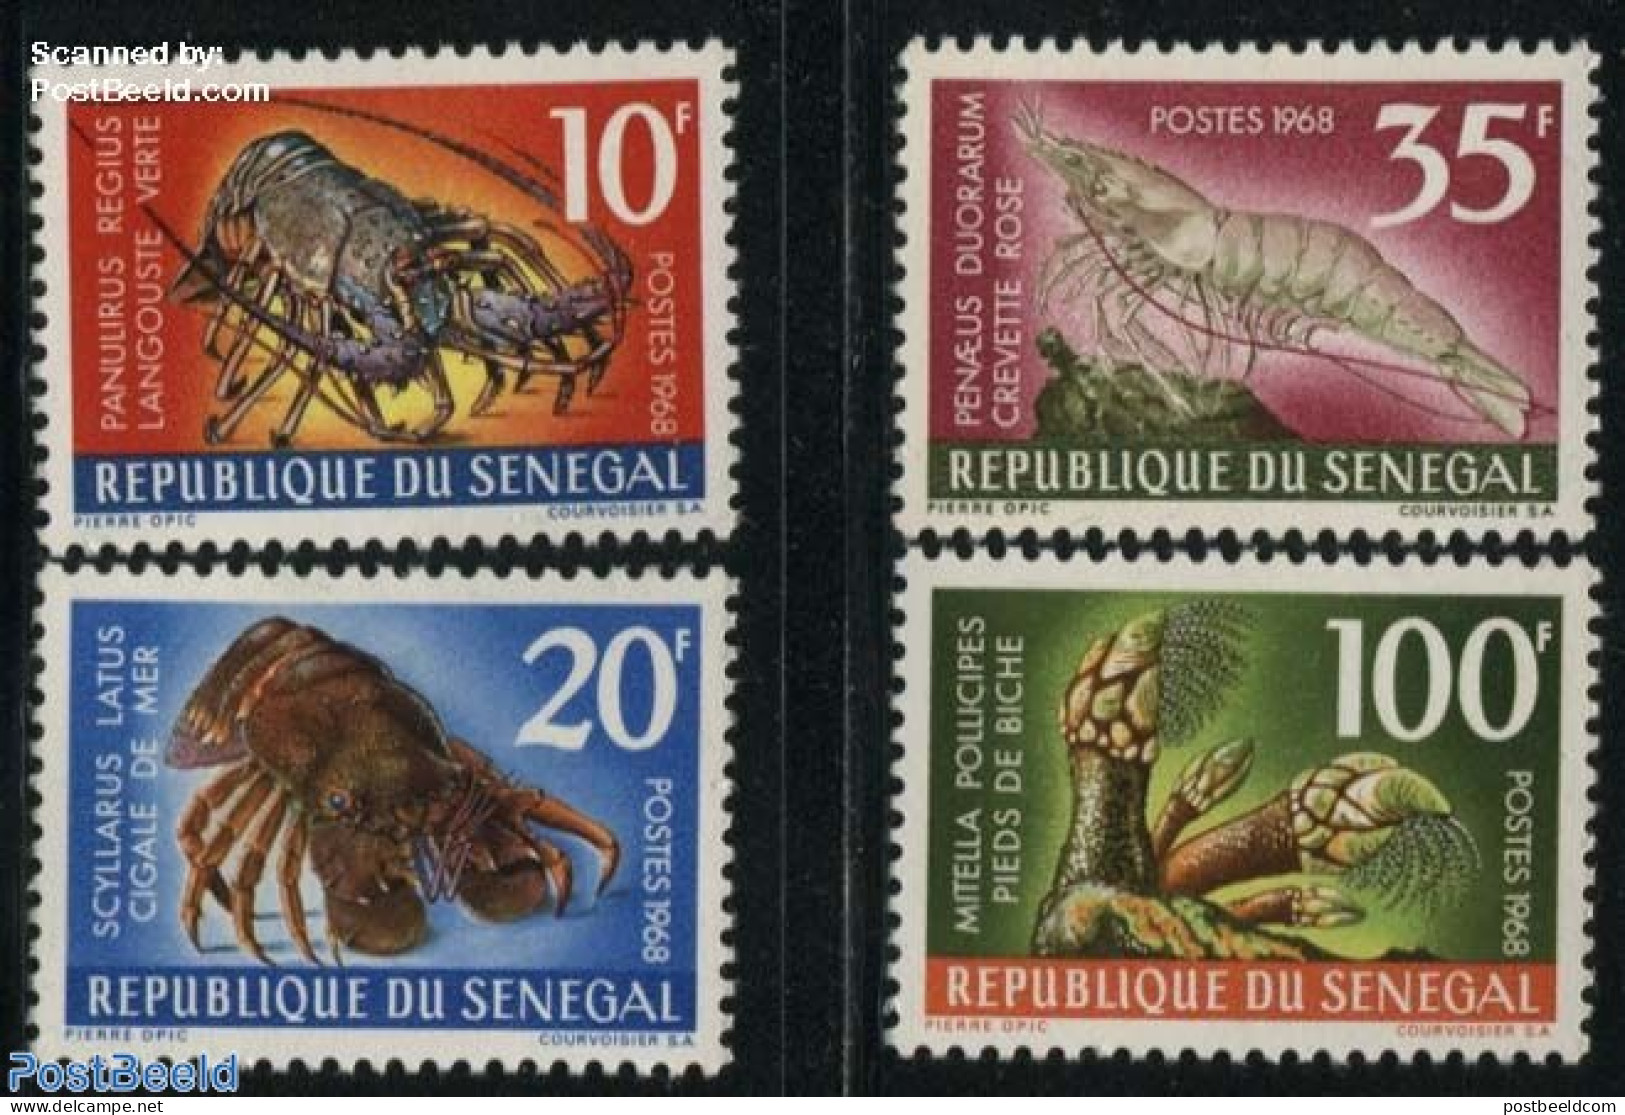 Senegal 1968 Crabs 4v, Mint NH, Nature - Crabs And Lobsters - Senegal (1960-...)